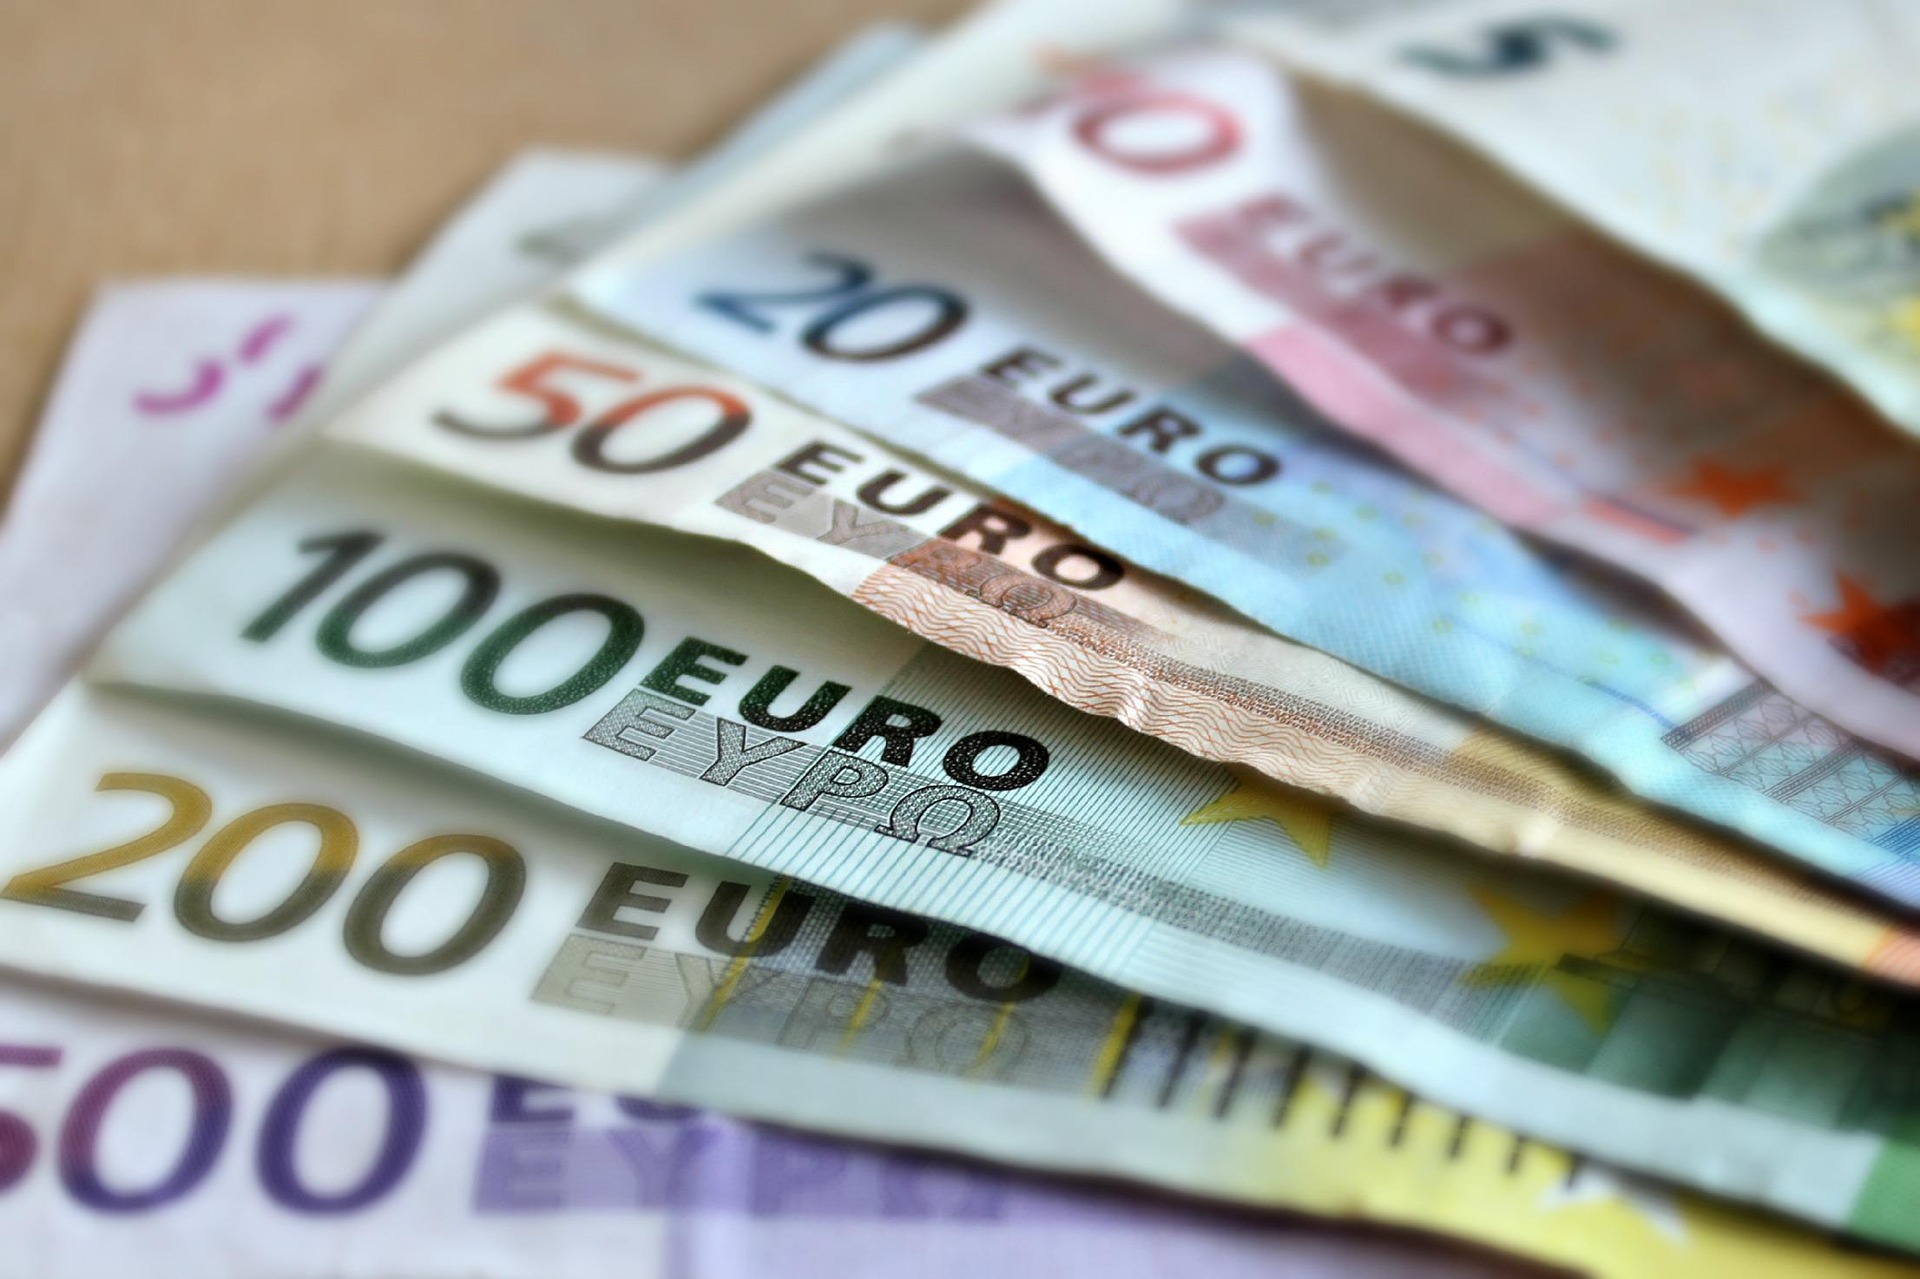 Ολλανδία: Ποια εταιρεία μοιράζει 1,9 δισ. ευρώ στους υπαλλήλους της;